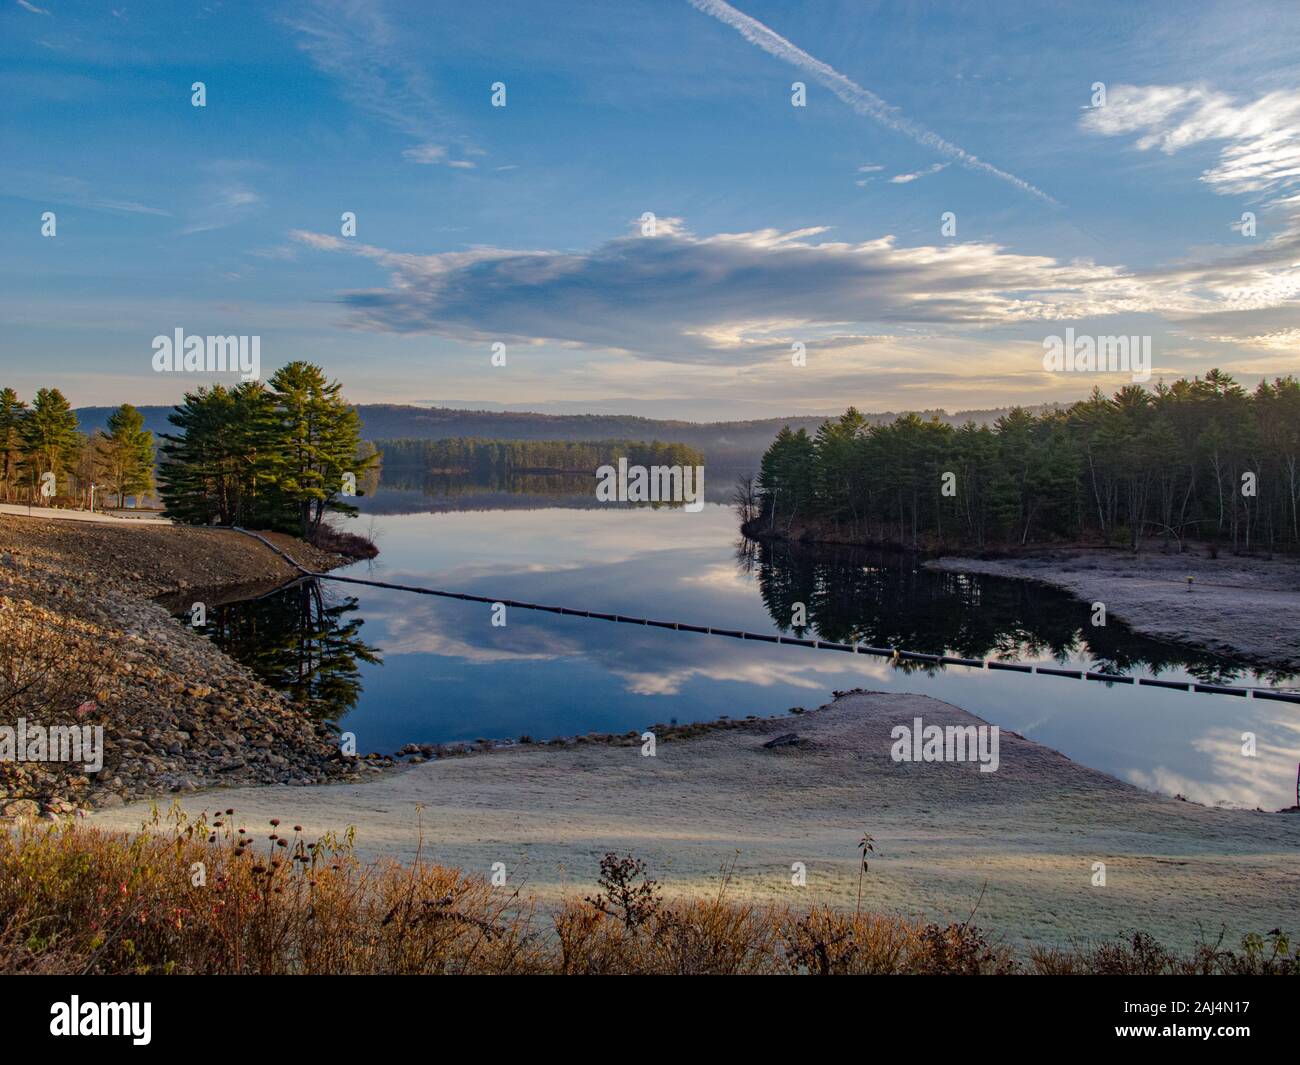 Tully Lago in Royalston, Massachusetts Foto Stock